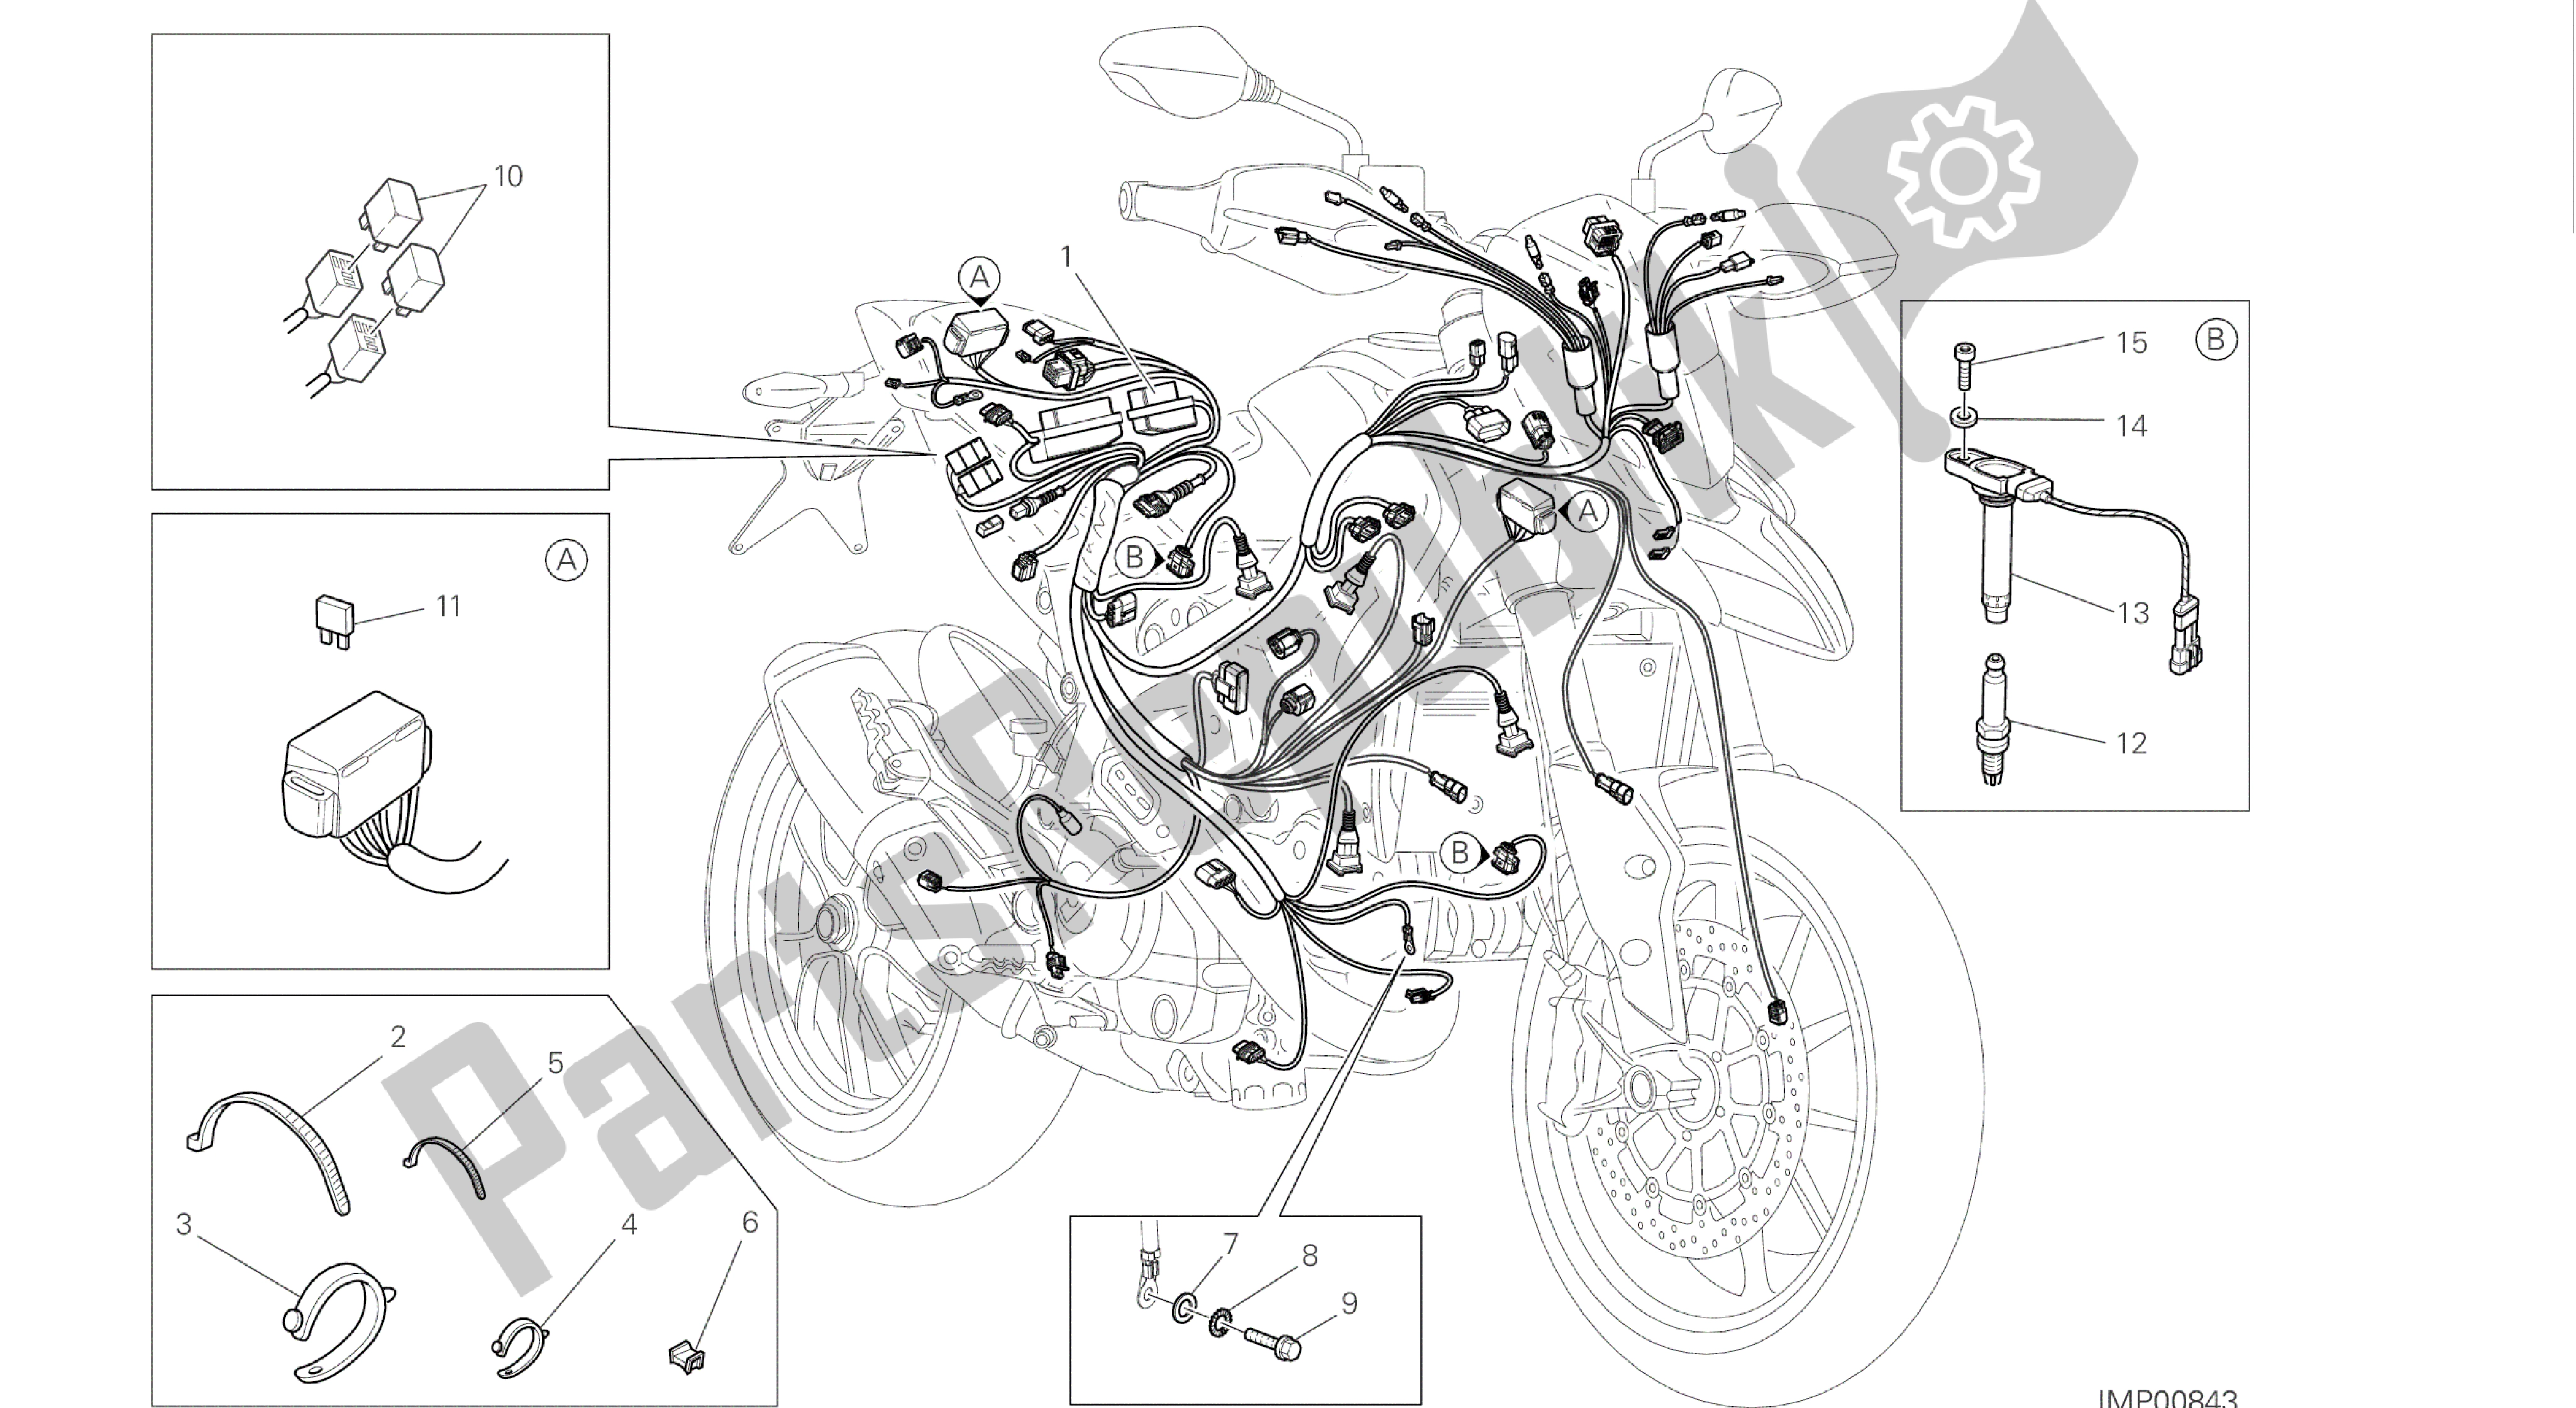 Tutte le parti per il Disegno 018 - Serie Di Cavi [mod: Hym-sp; Xst: Aus, Eur, Fra, Jap, Twn] Gruppo Elettrico del Ducati Hypermotard SP 821 2014